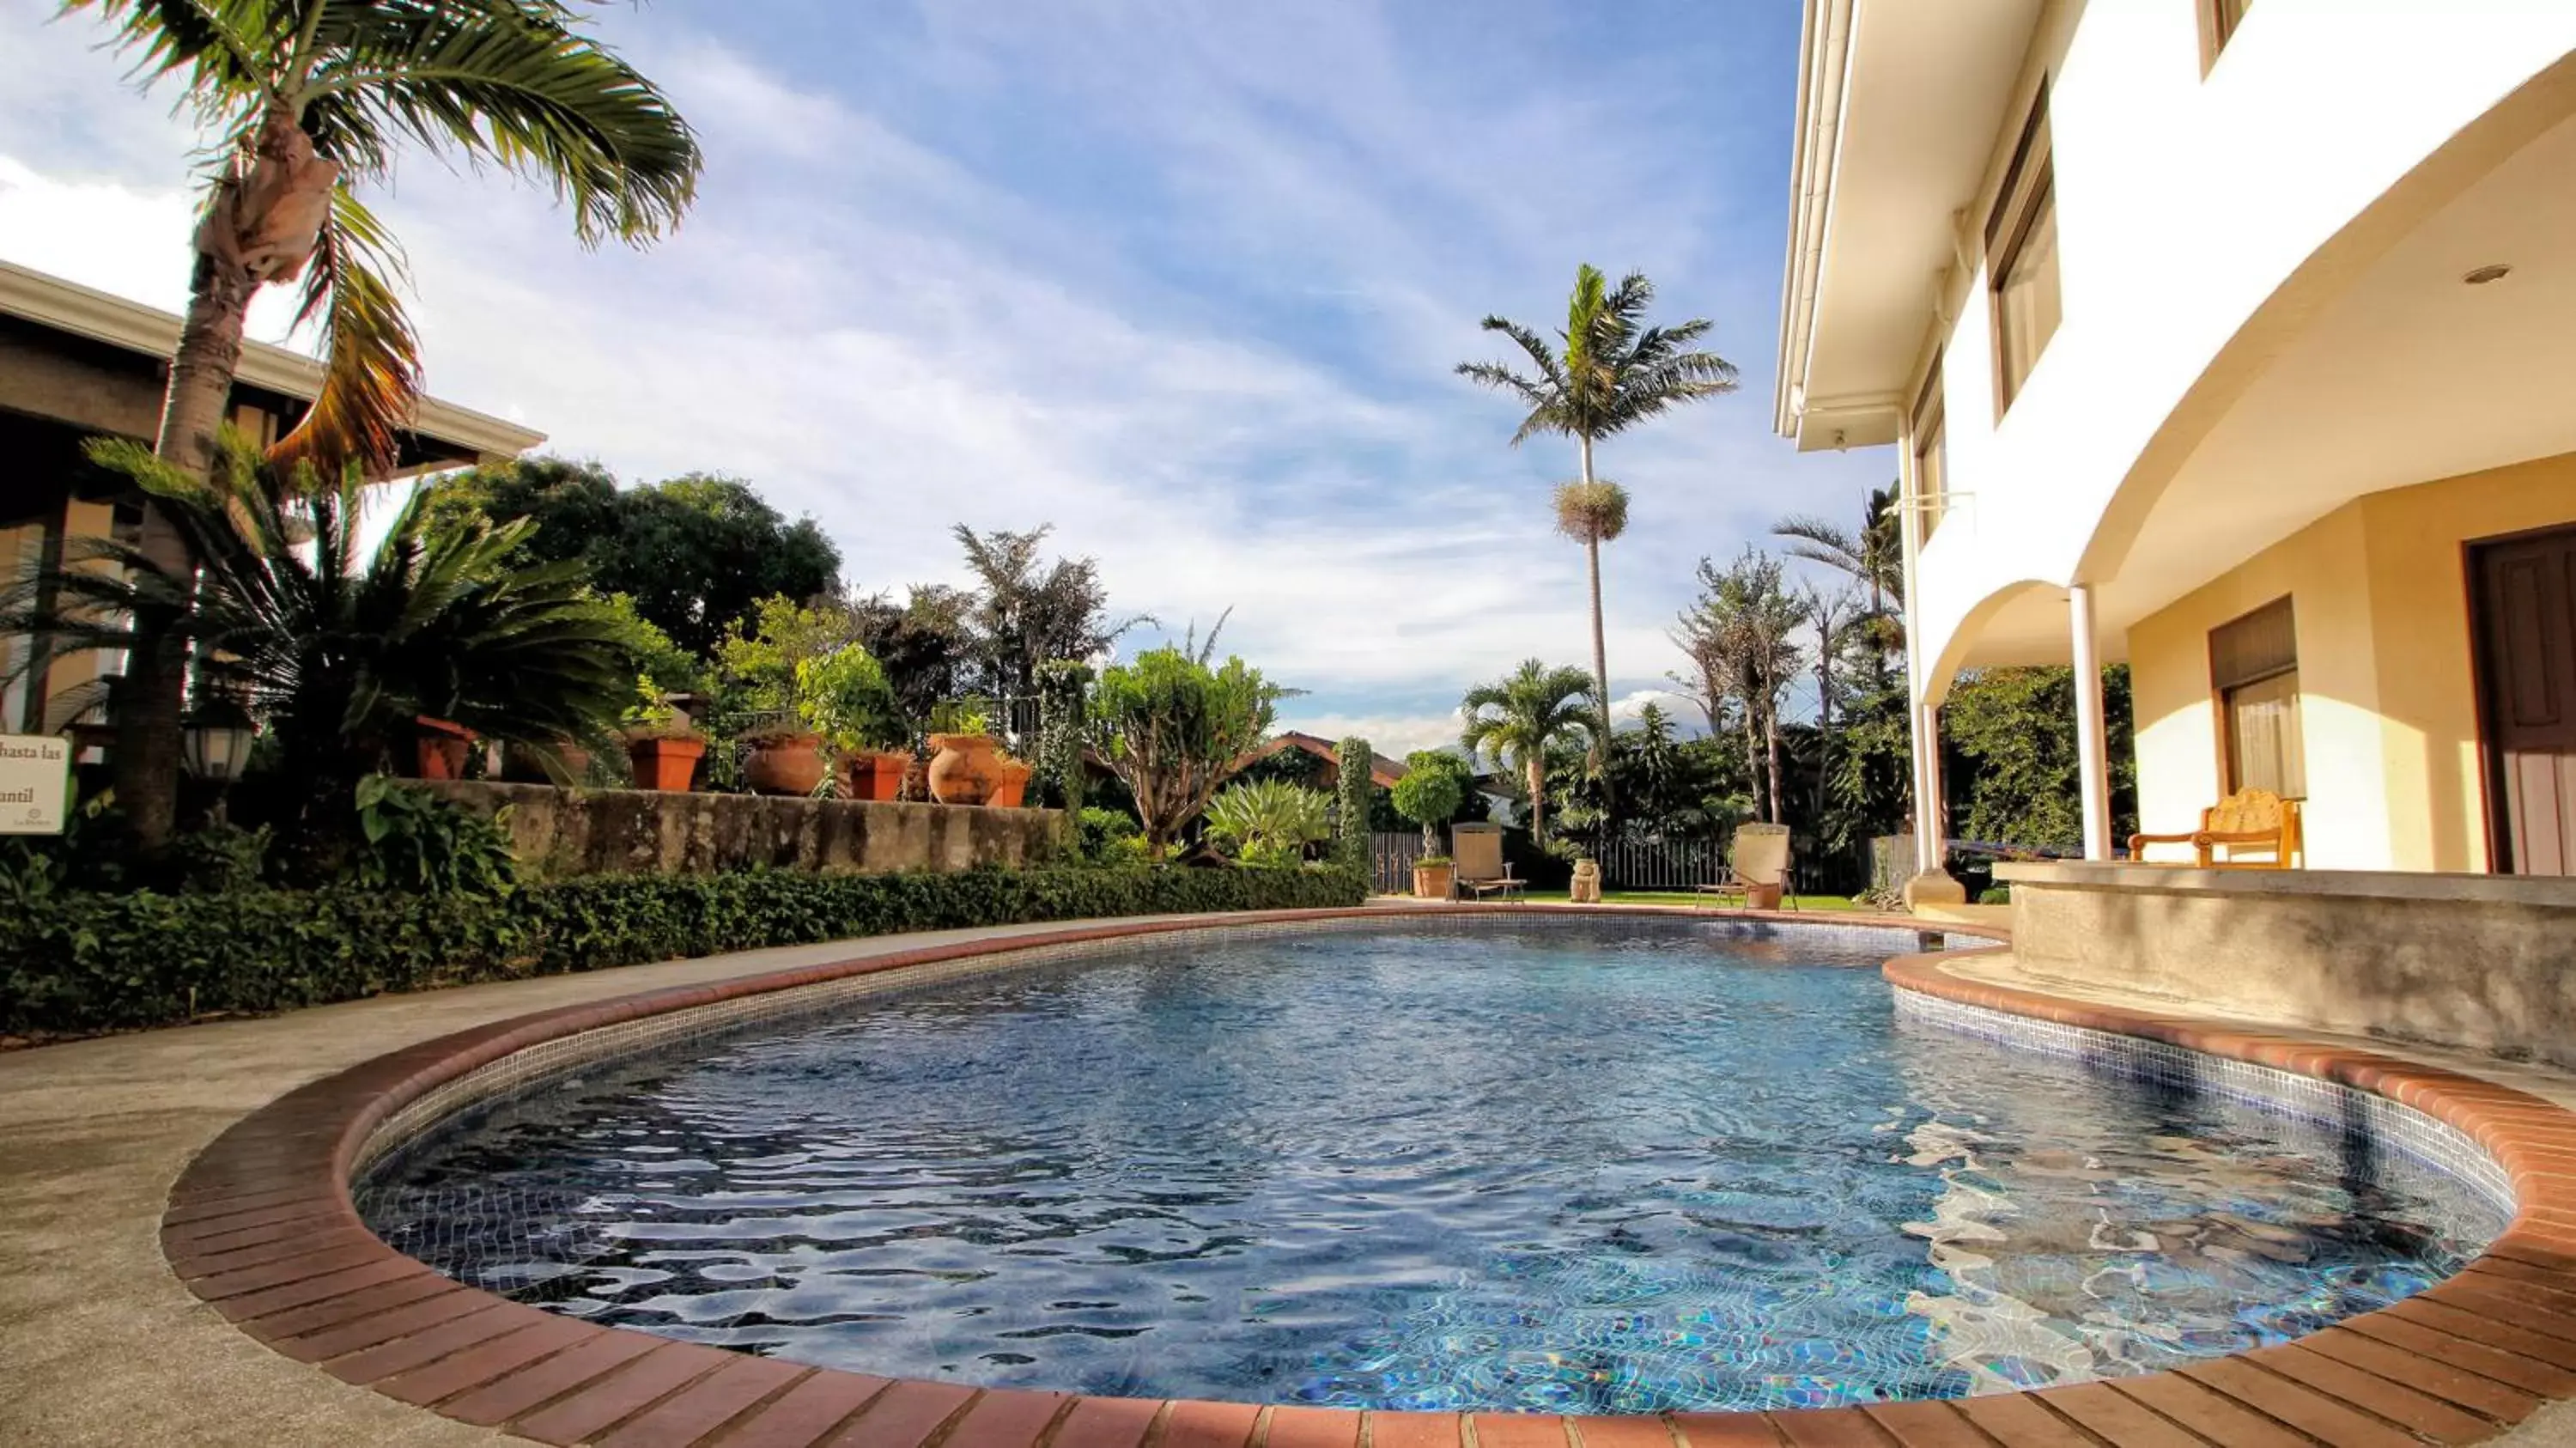 Swimming Pool in La Riviera Hotel